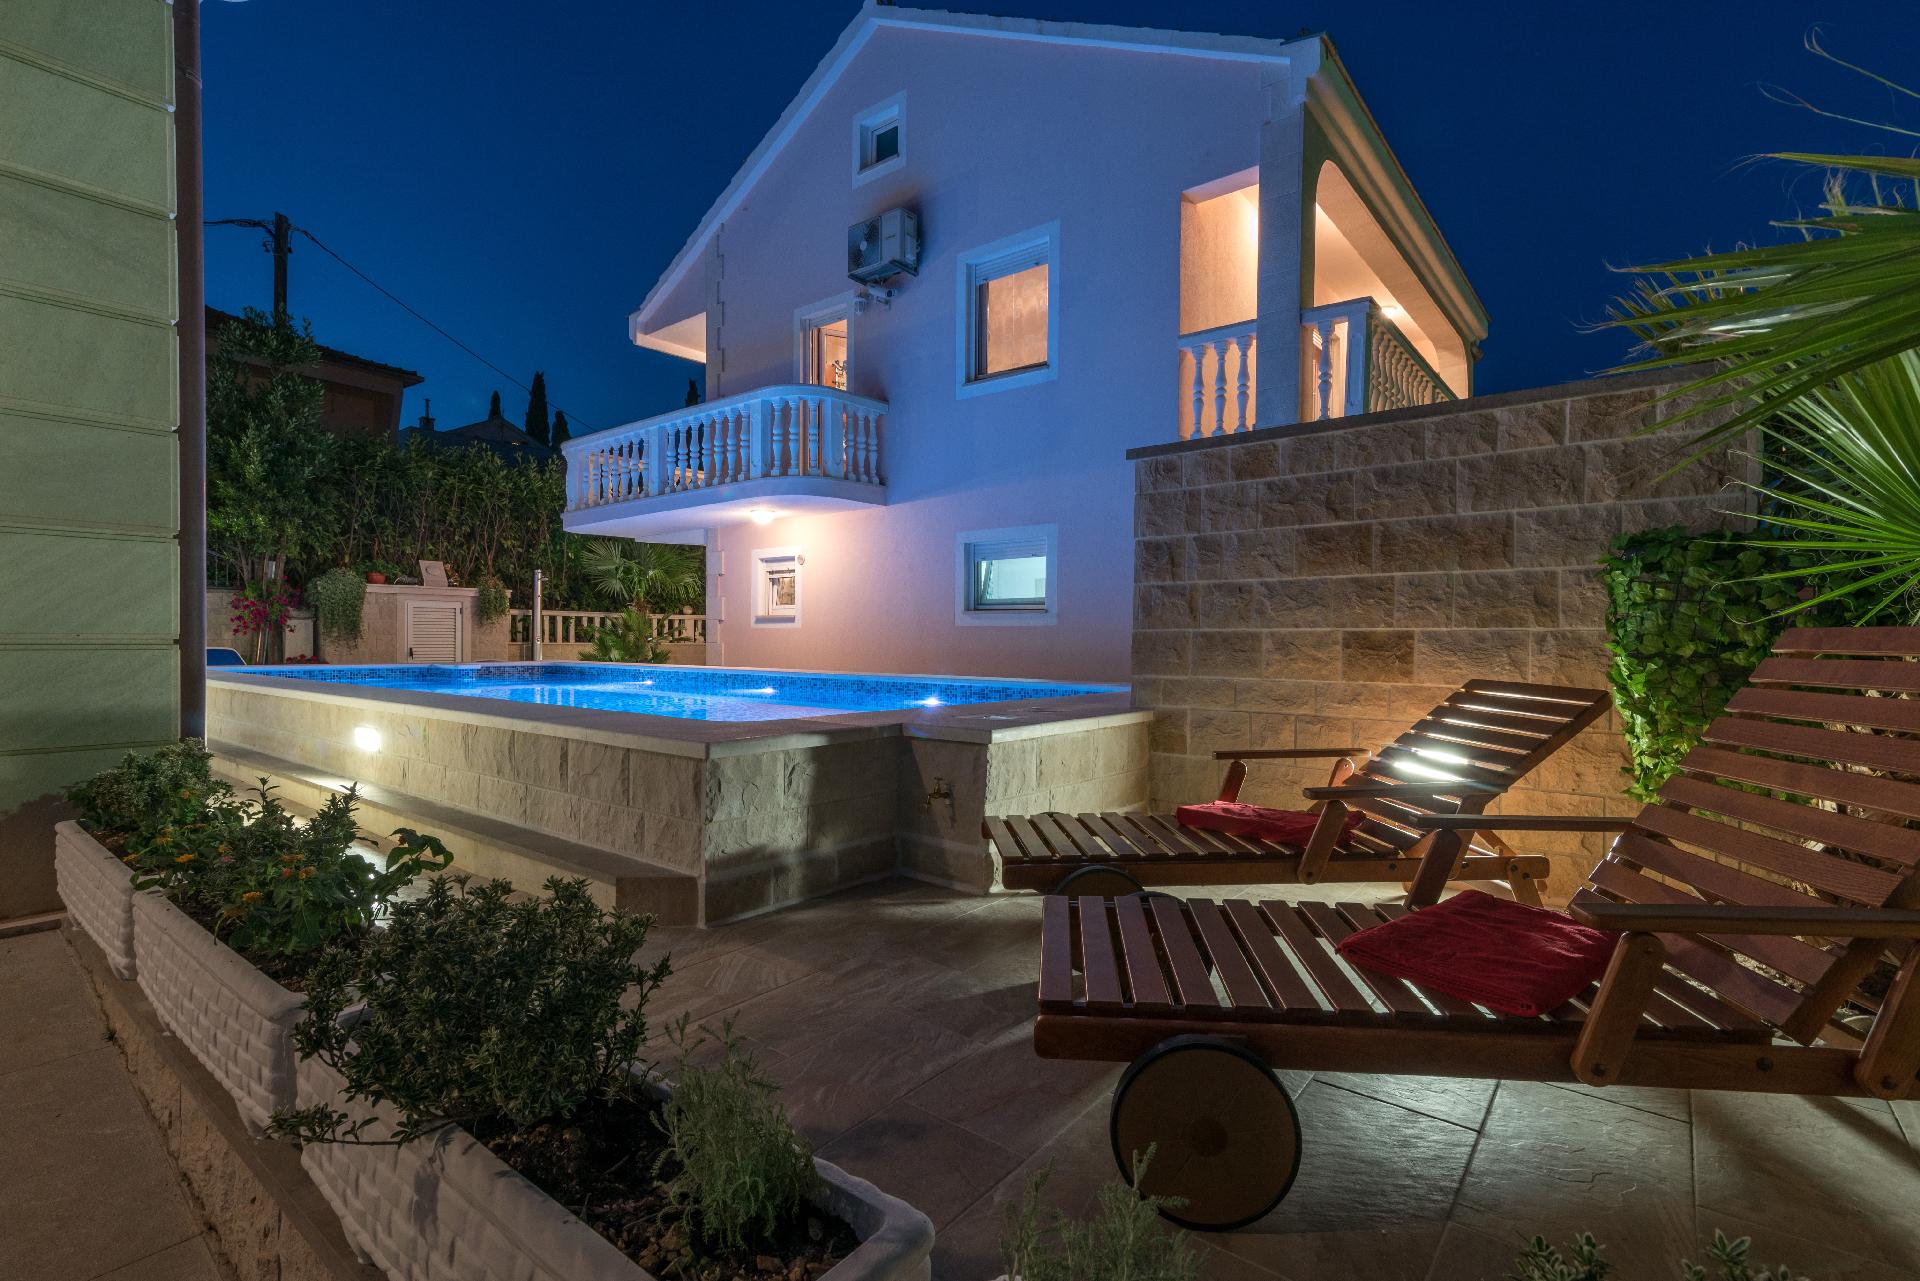 Ferienhaus mit Privatpool für 9 Personen ca.  Ferienhaus in Kroatien